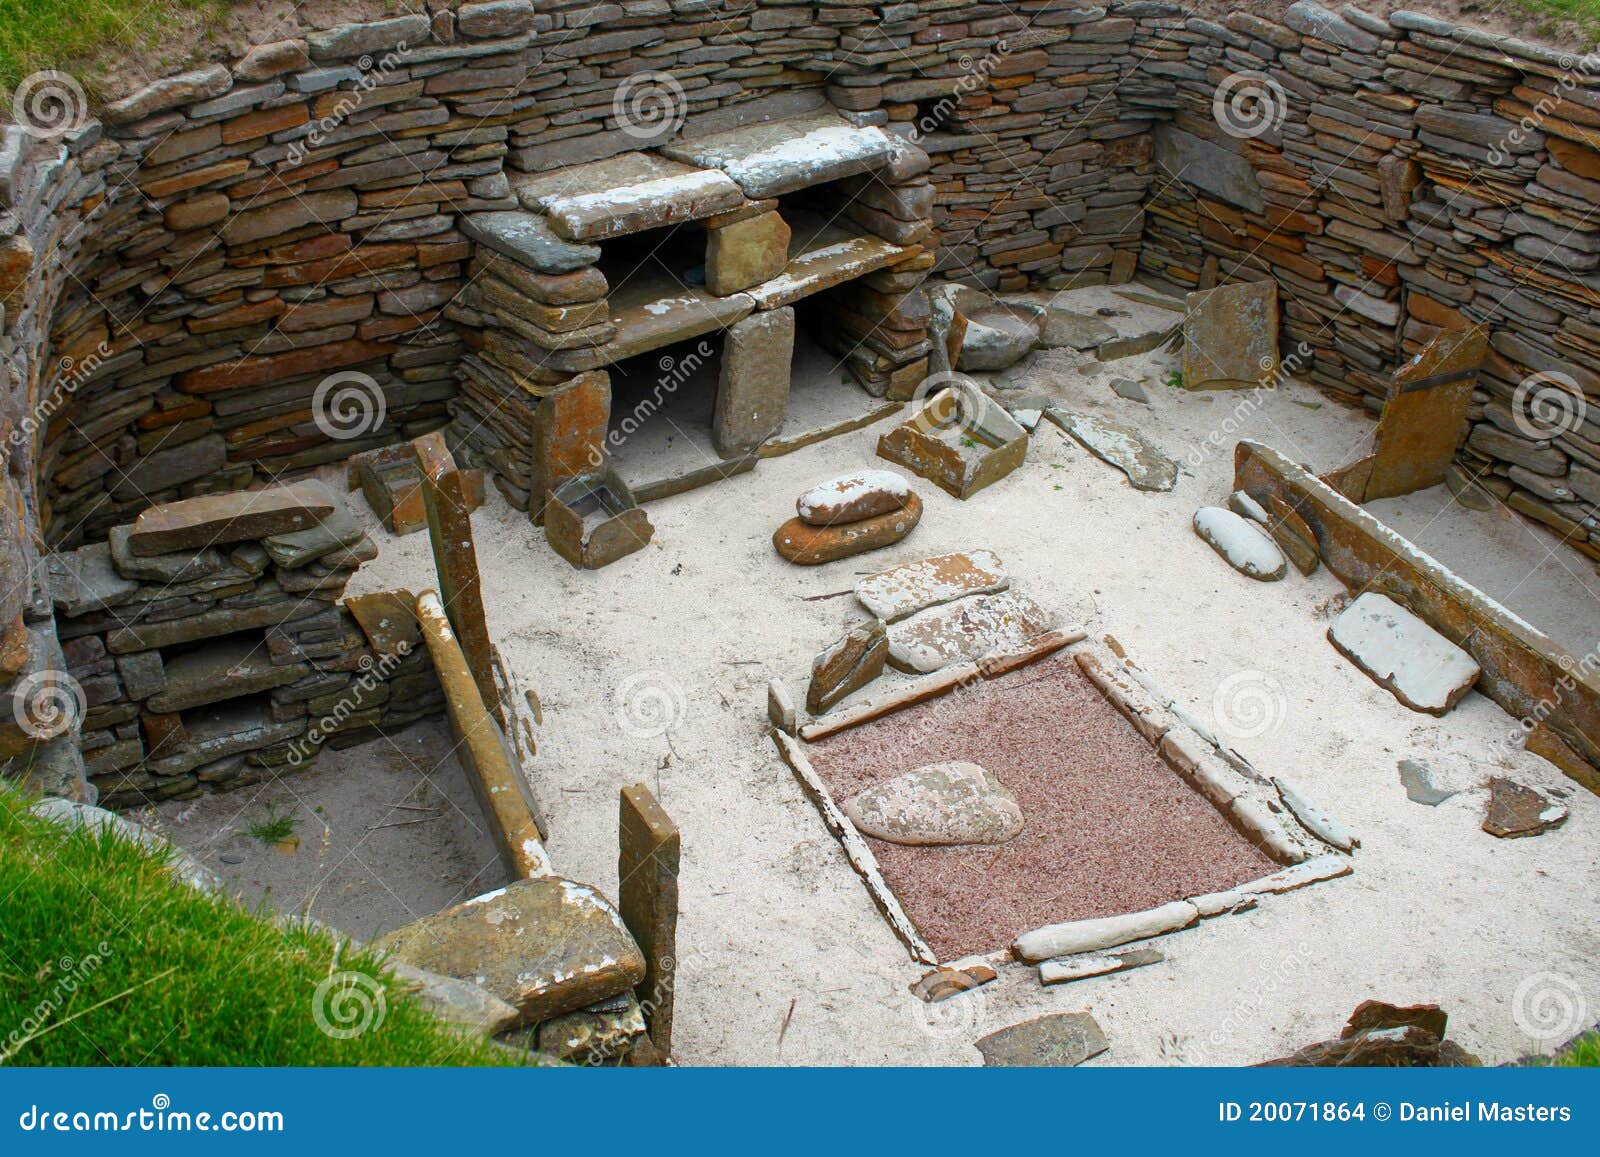 skara brae - preserved neolithic house